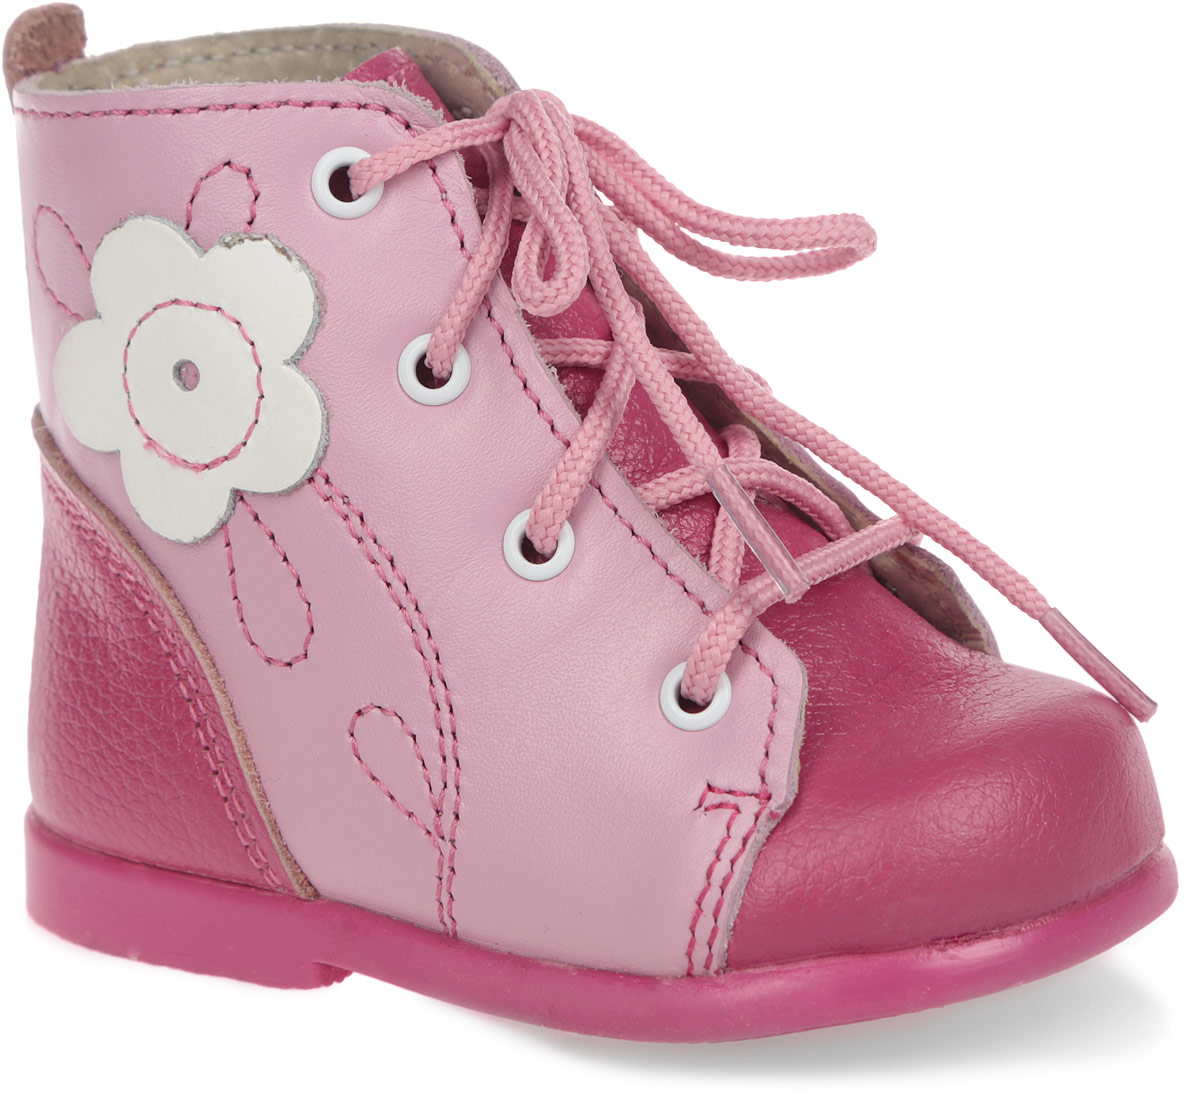 Ботинки для девочки Скороход, цвет: фуксия, розовый. 13-137-3. Размер 17. Длина стельки 10,5 см